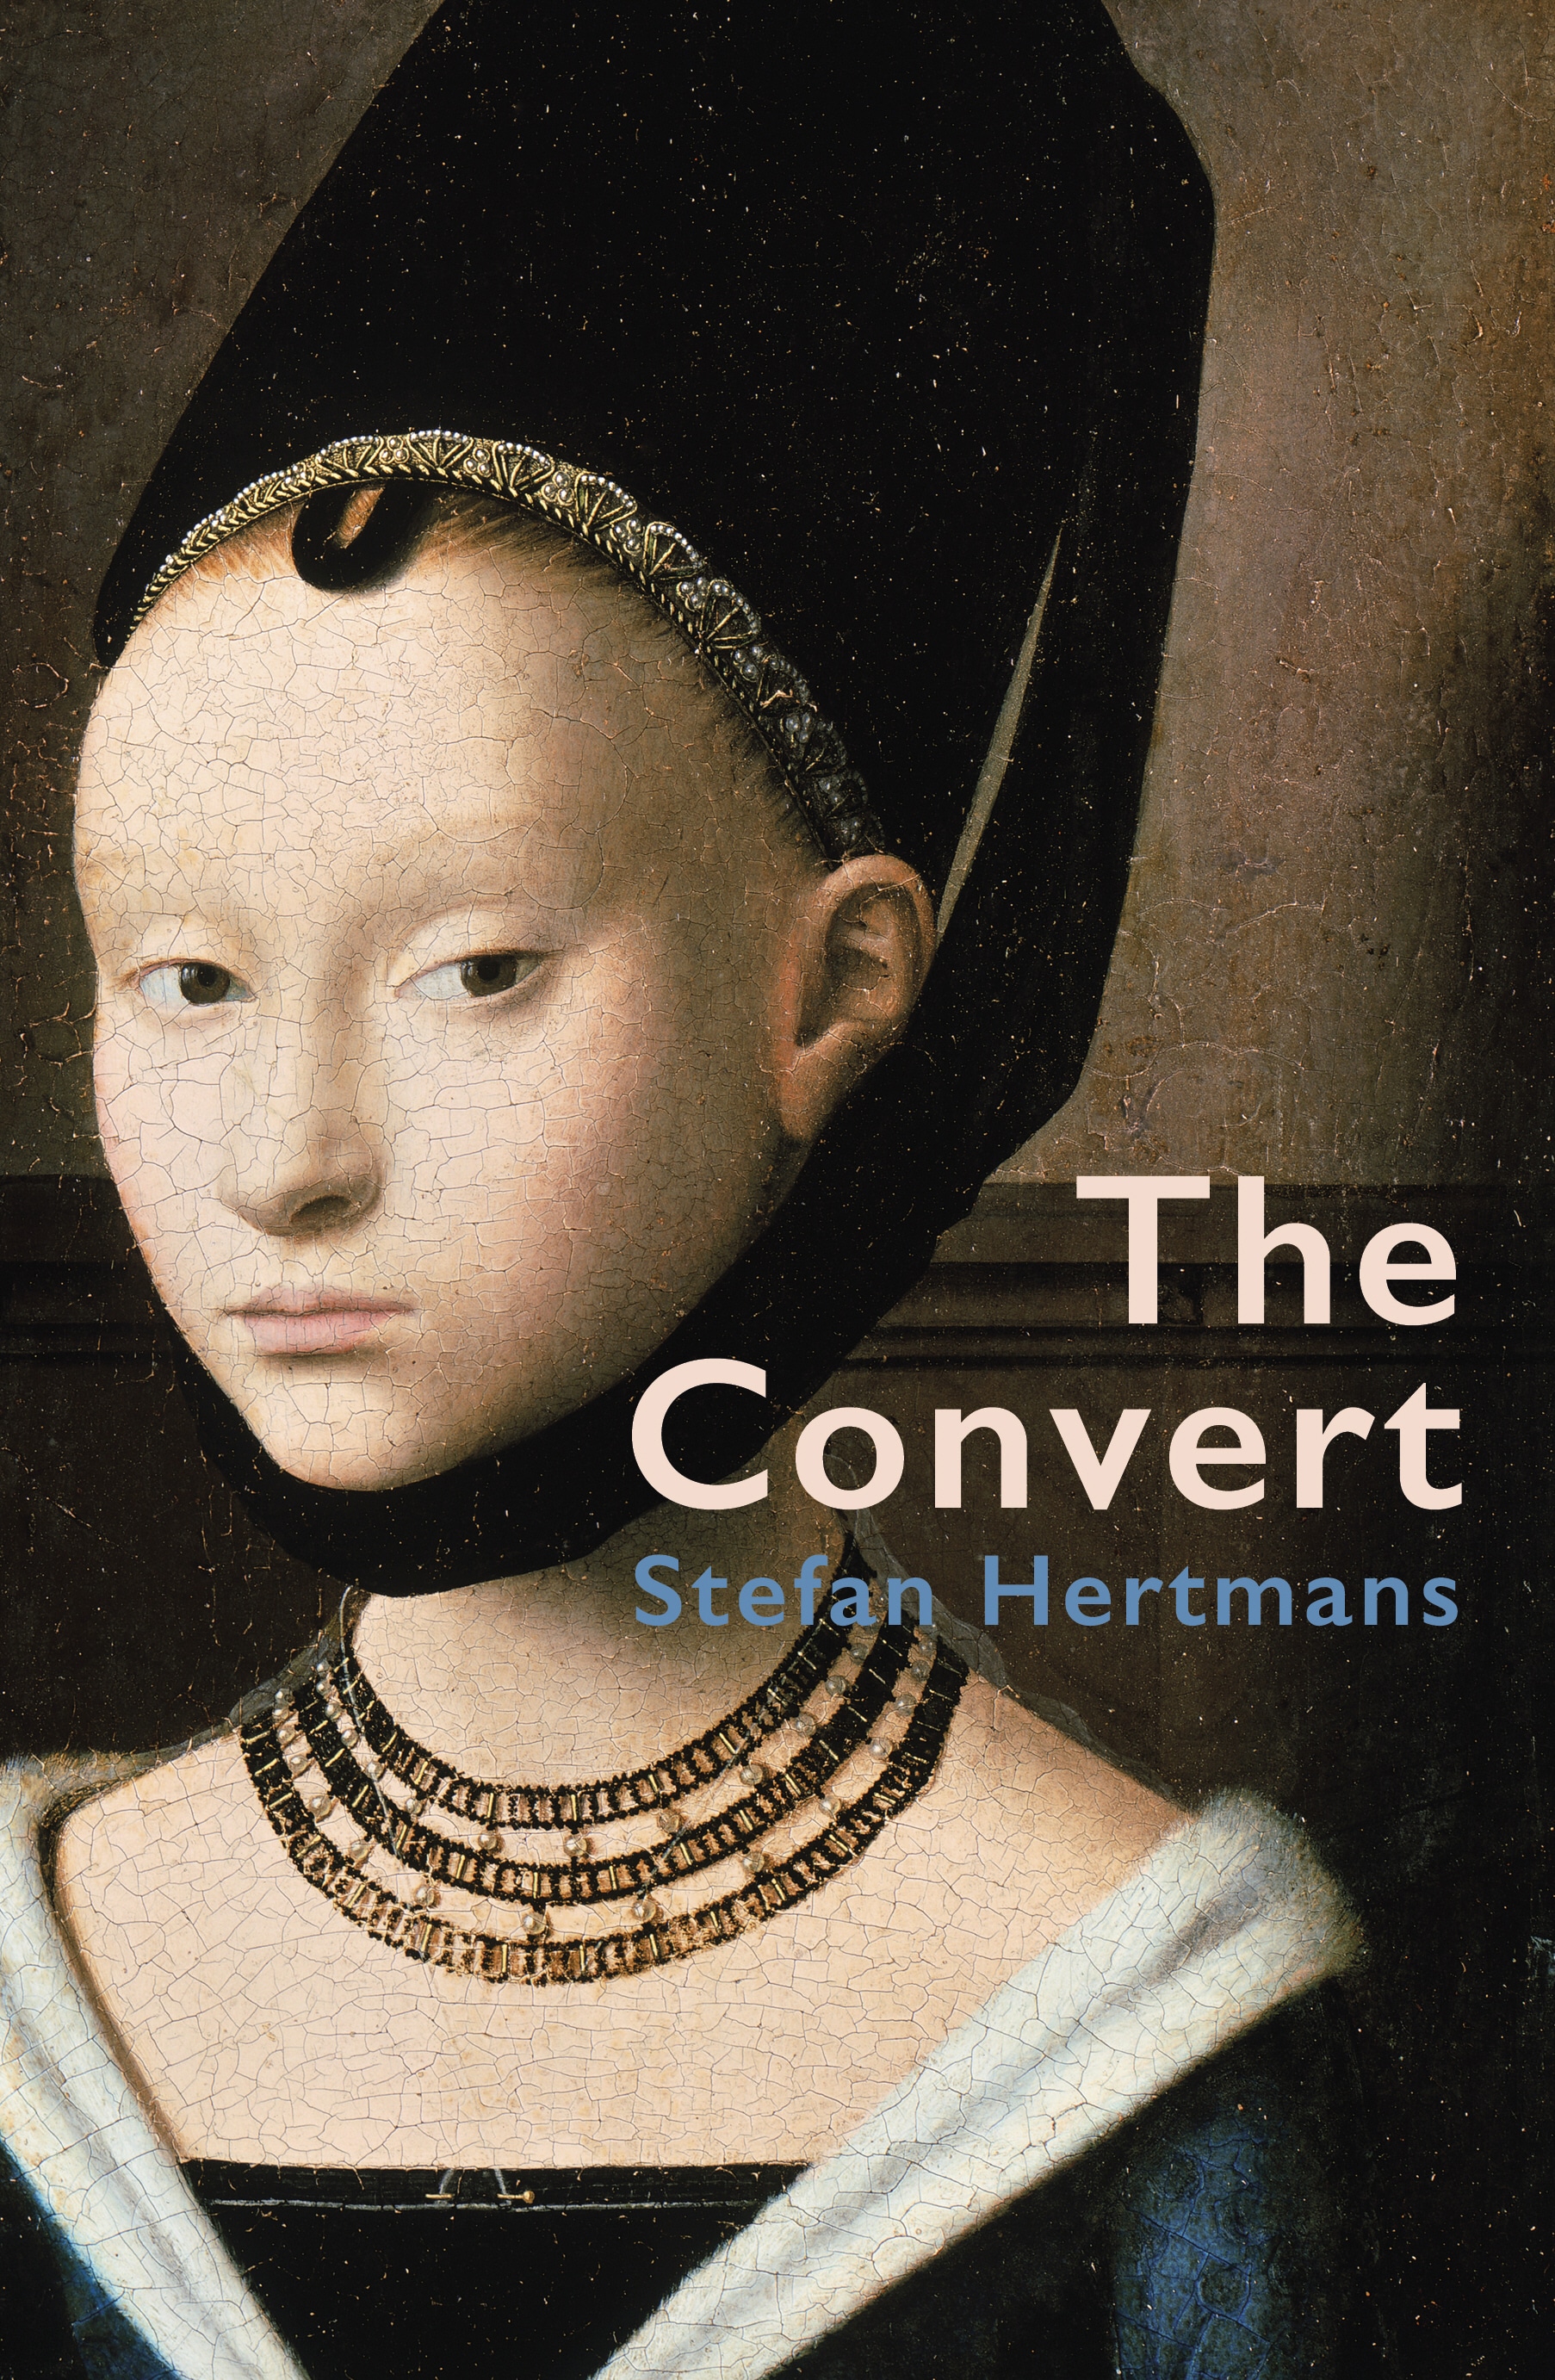 Book “The Convert” by Stefan Hertmans — June 13, 2019